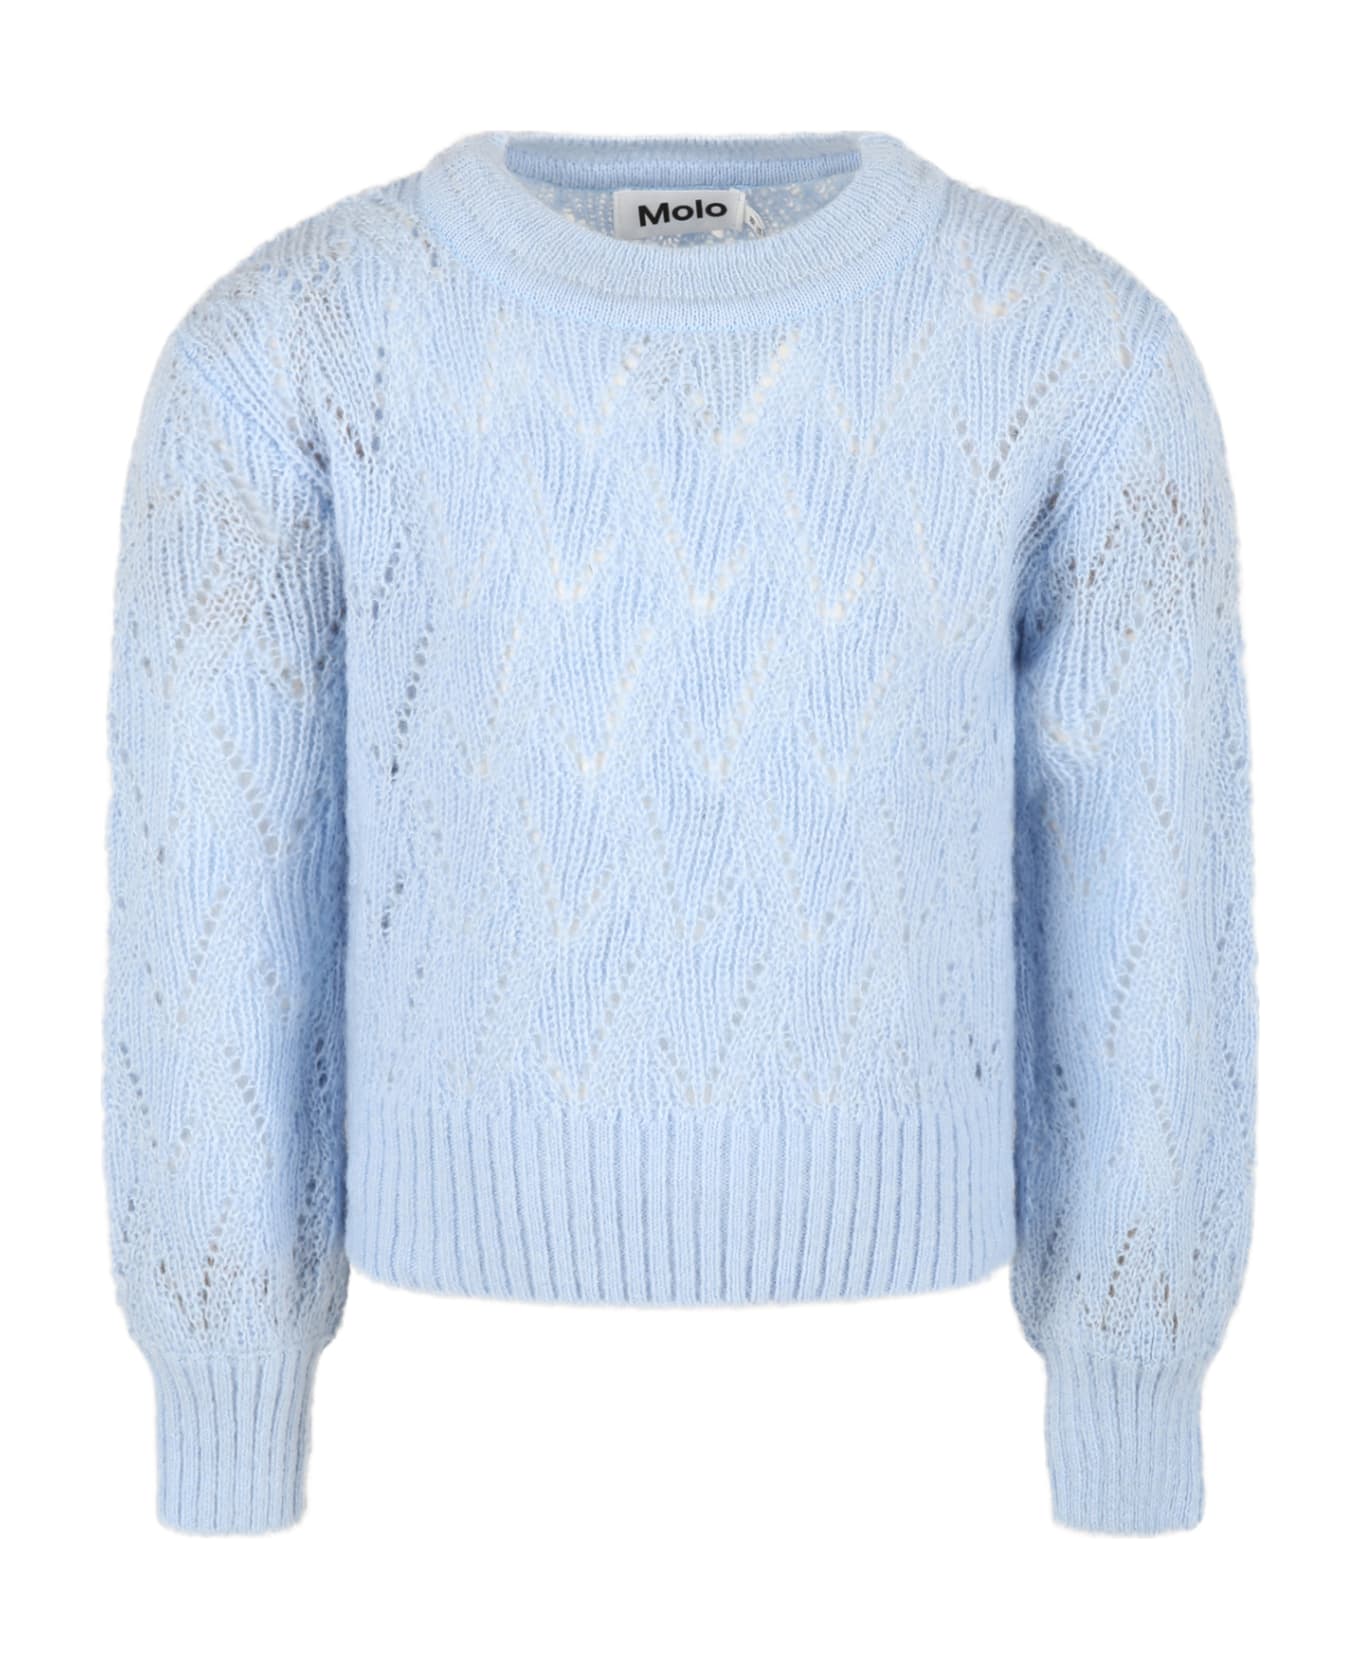 Molo Light-blue Sweater For Girl - Light Blue